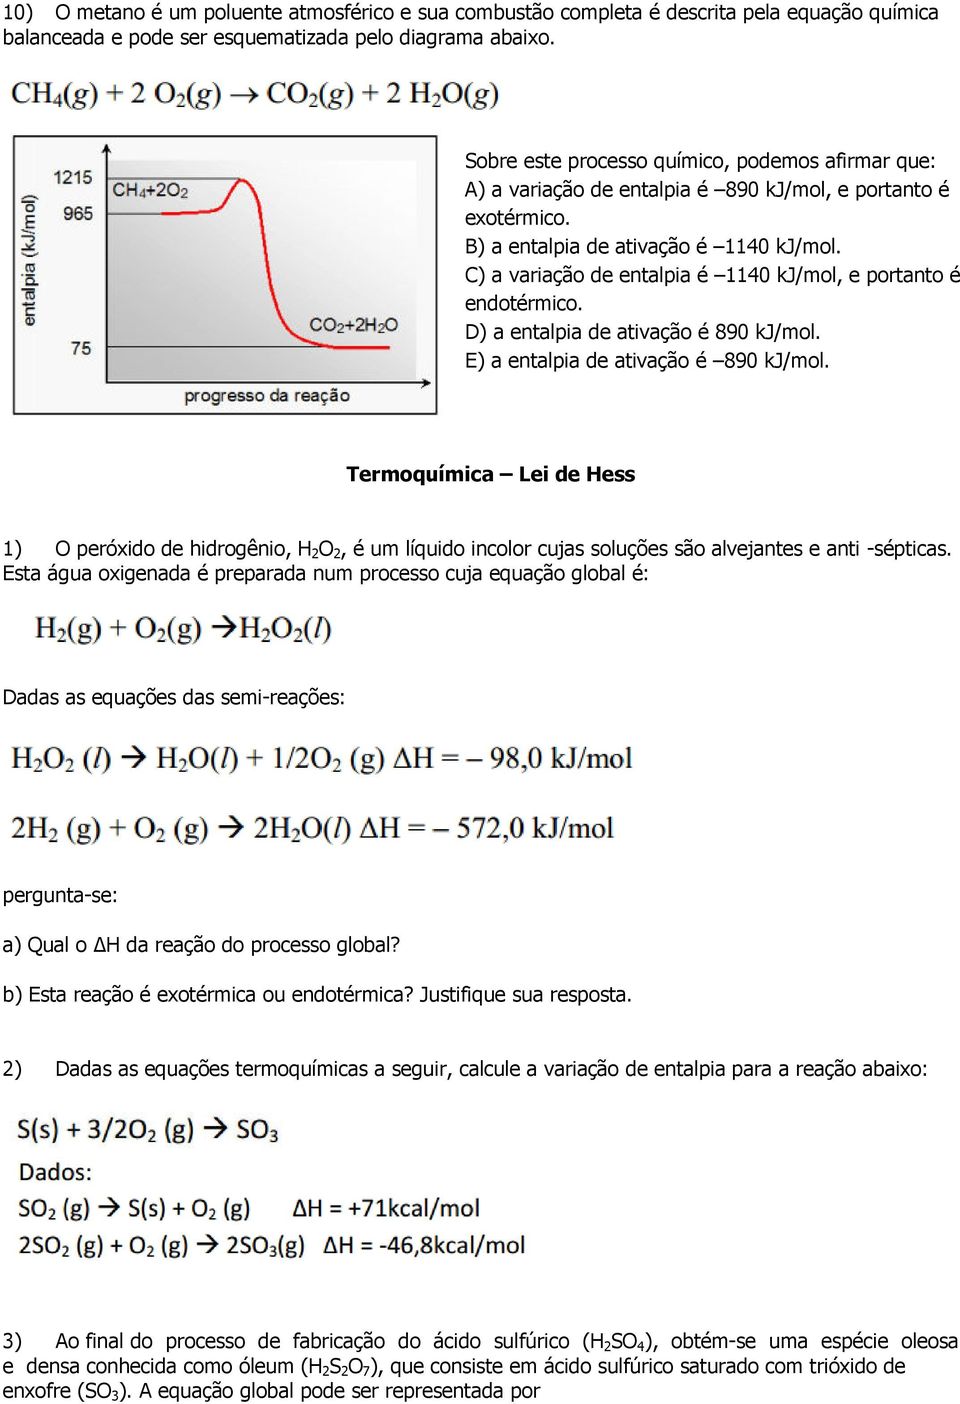 C) a variação de entalpia é 1140 kj/mol, e portanto é endotérmico. D) a entalpia de ativação é 890 kj/mol. E) a entalpia de ativação é 890 kj/mol.